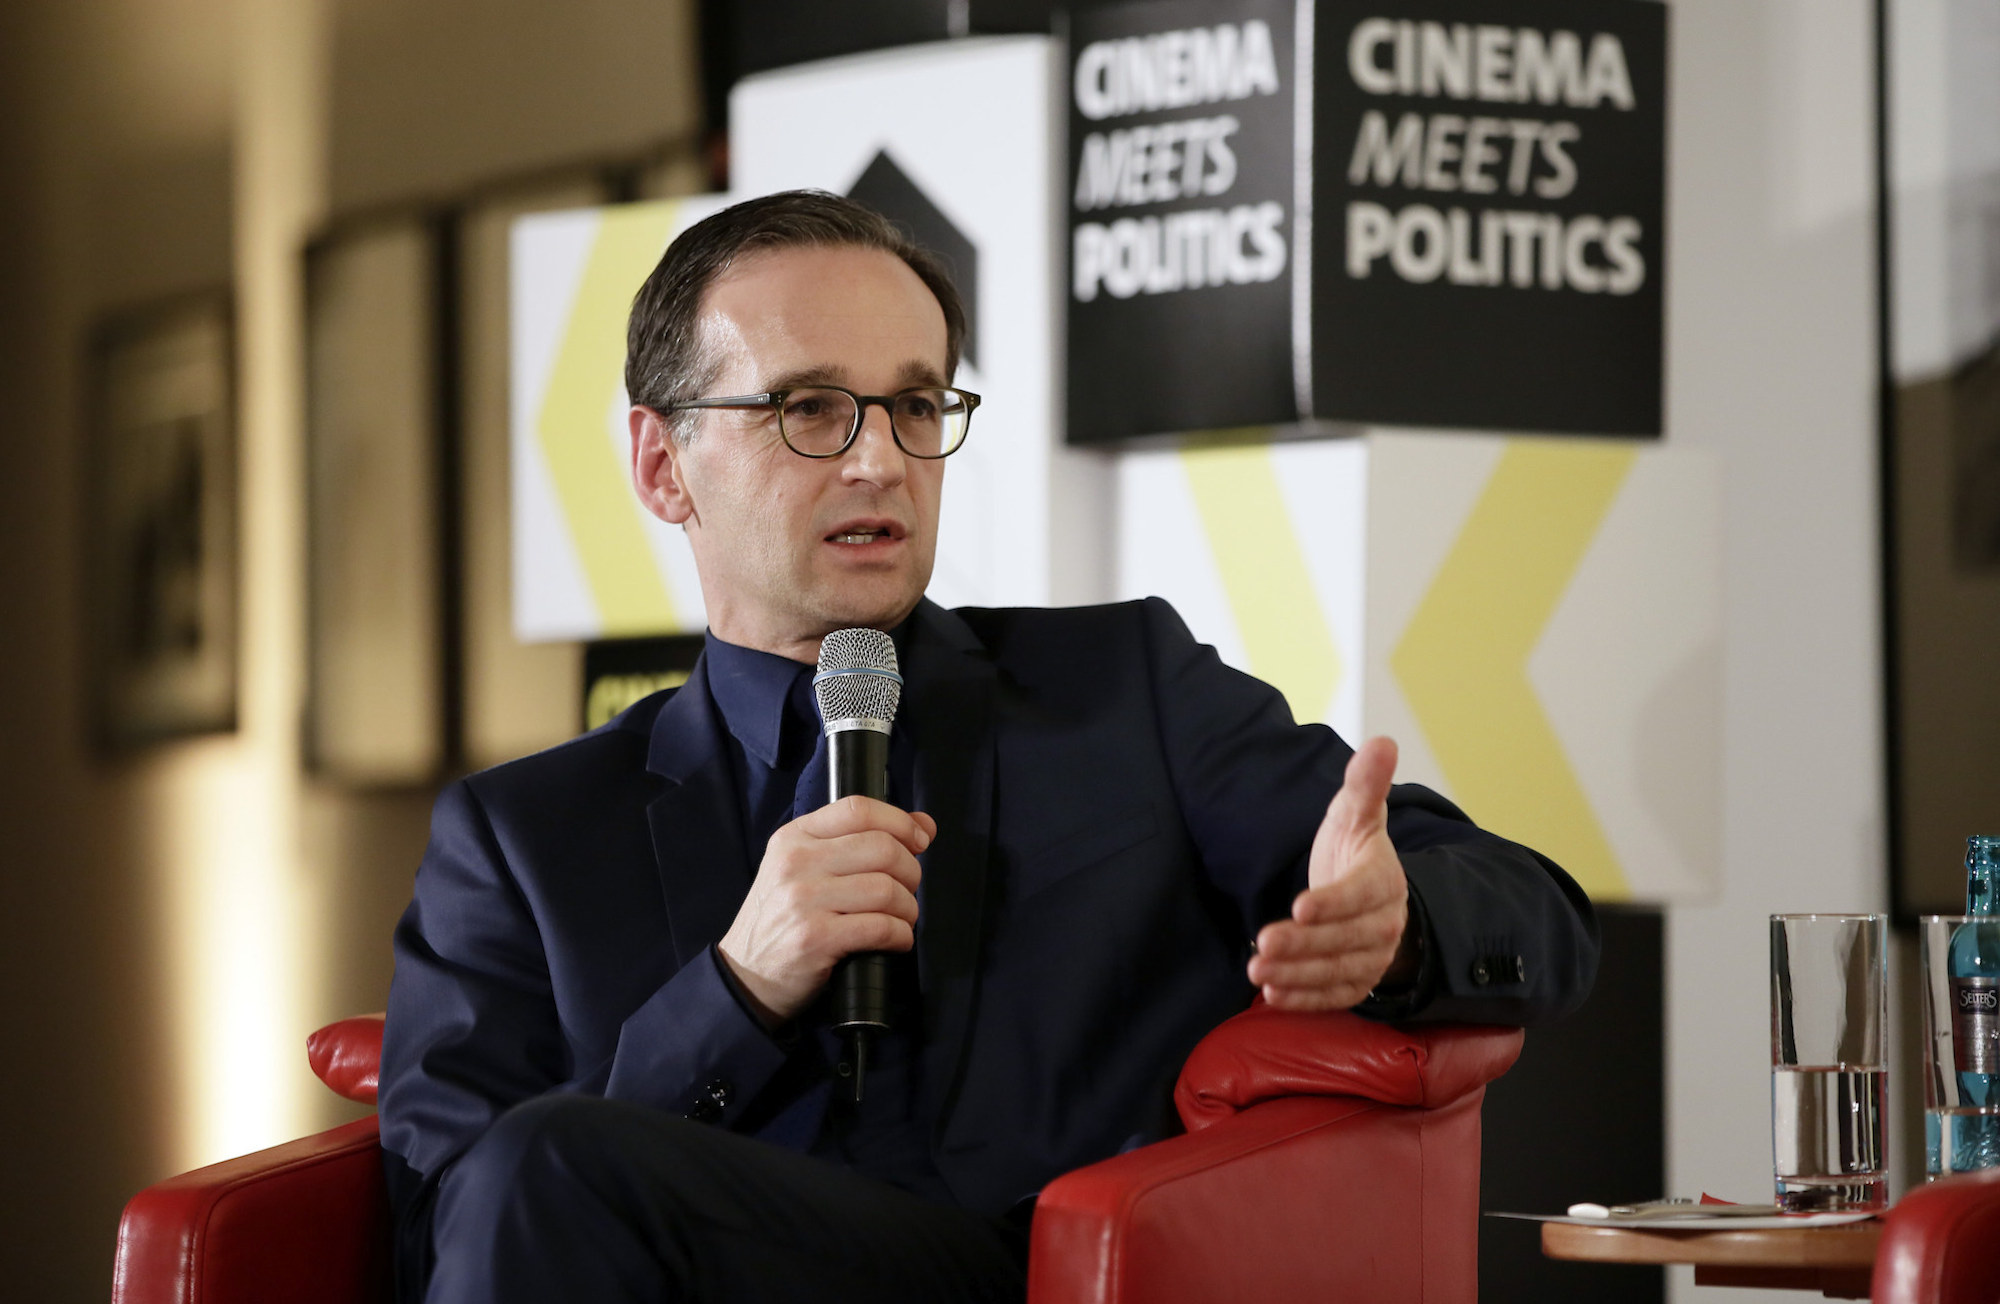 Foto: Heiko Maas beim Branchengespräch „Cinema meets Politics“